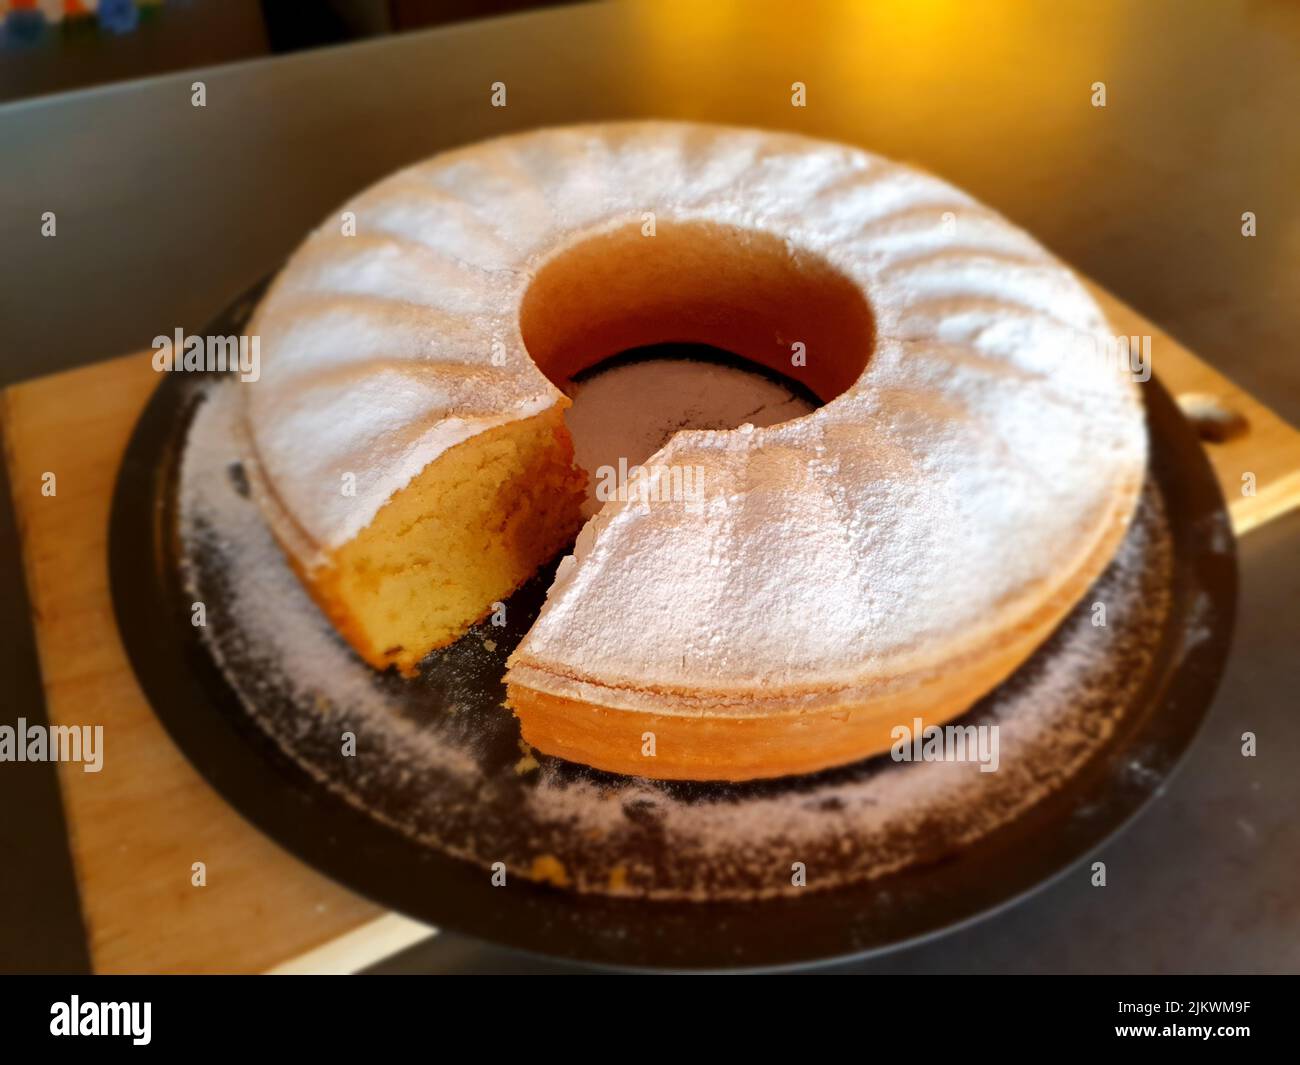 A freshly baked homemade vanilla cake Stock Photo